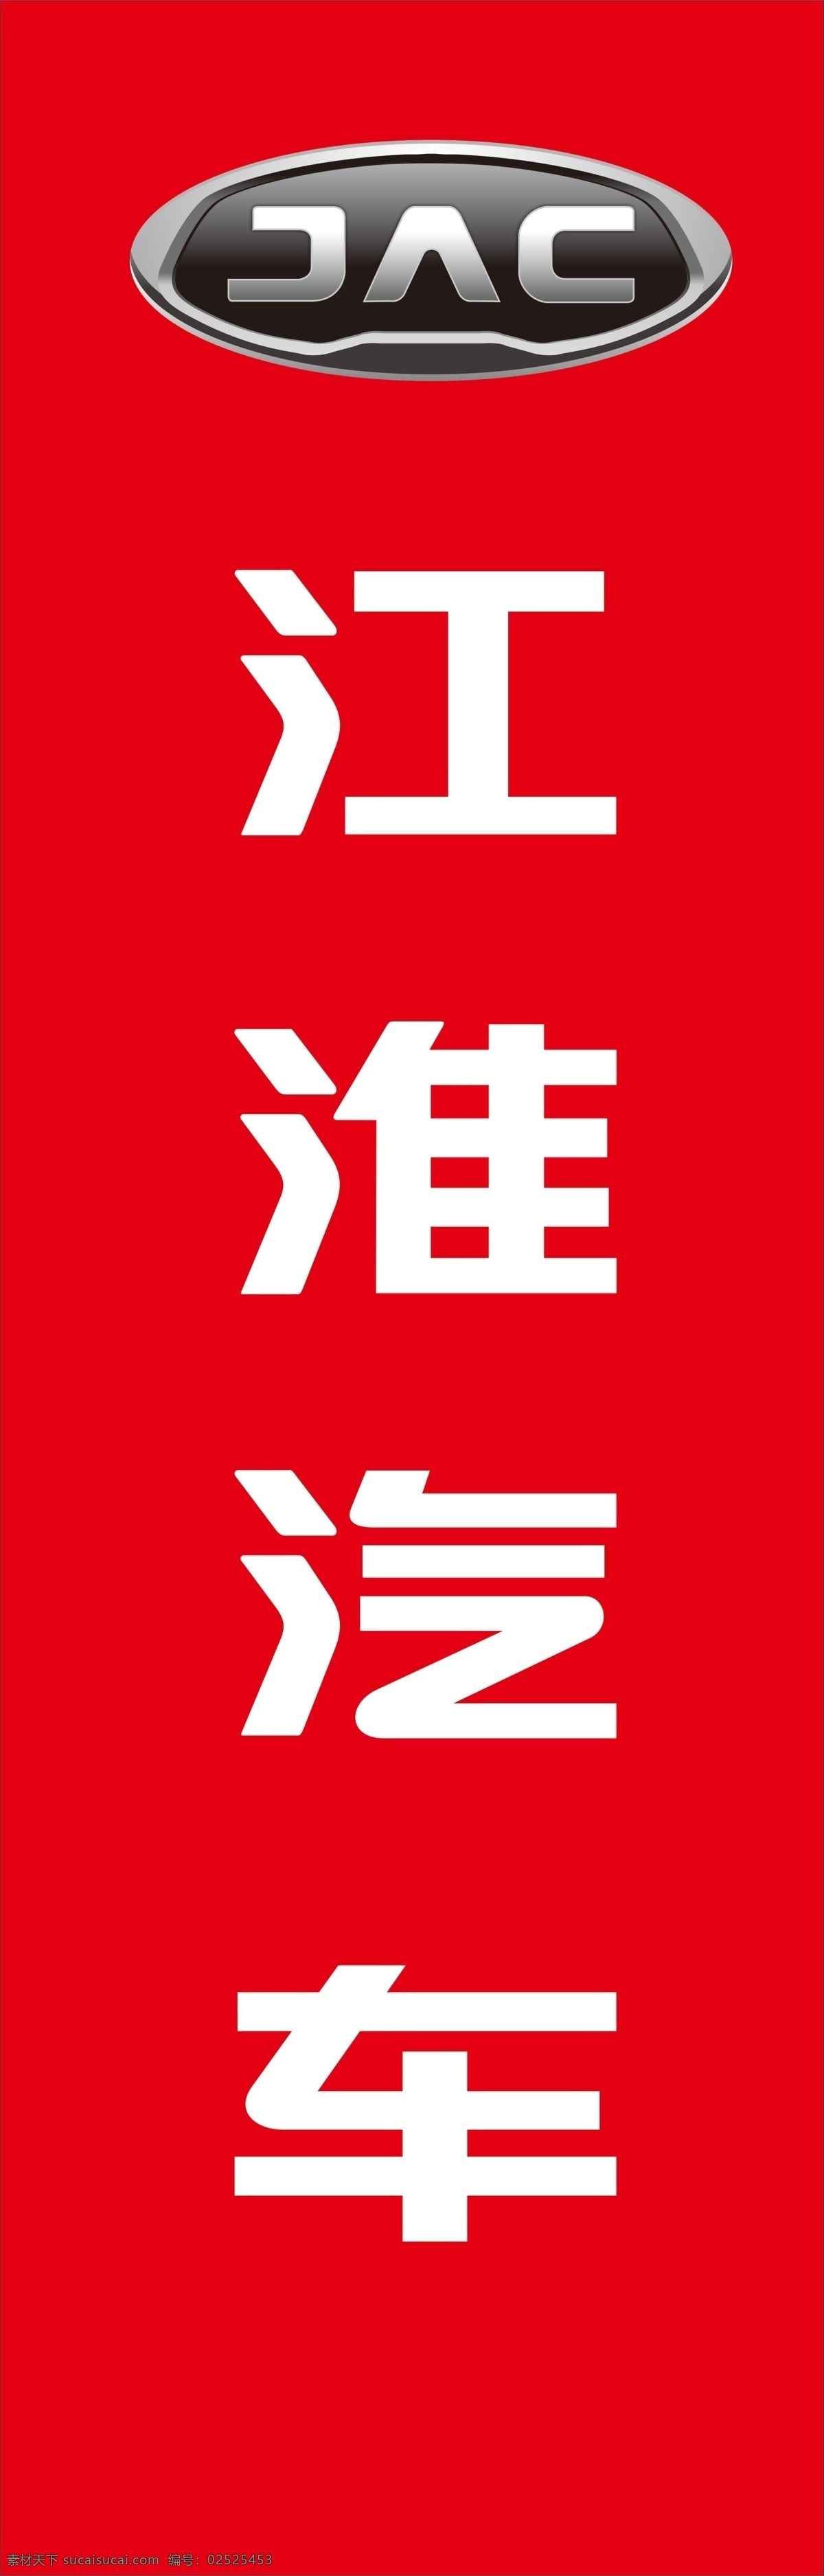 江淮汽车 汽贸公司 4s店 汽车代理店 汽车置换 标志 logo 汽车 展板模板